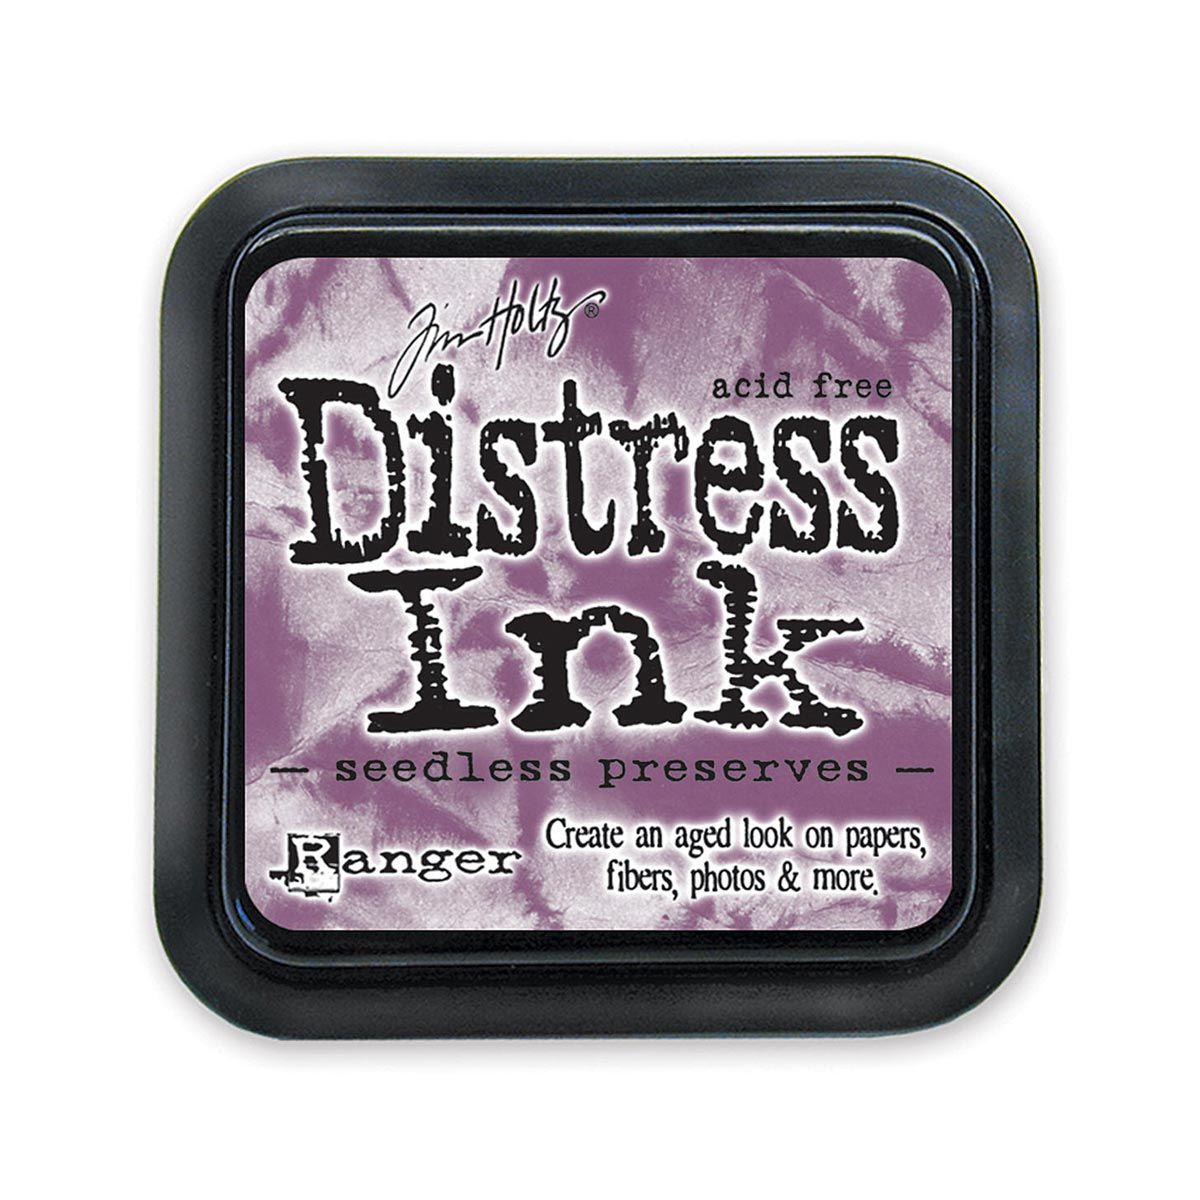 Tim Holtz Mini Distress Ink Pad Seedless Preserves 1x1 inch